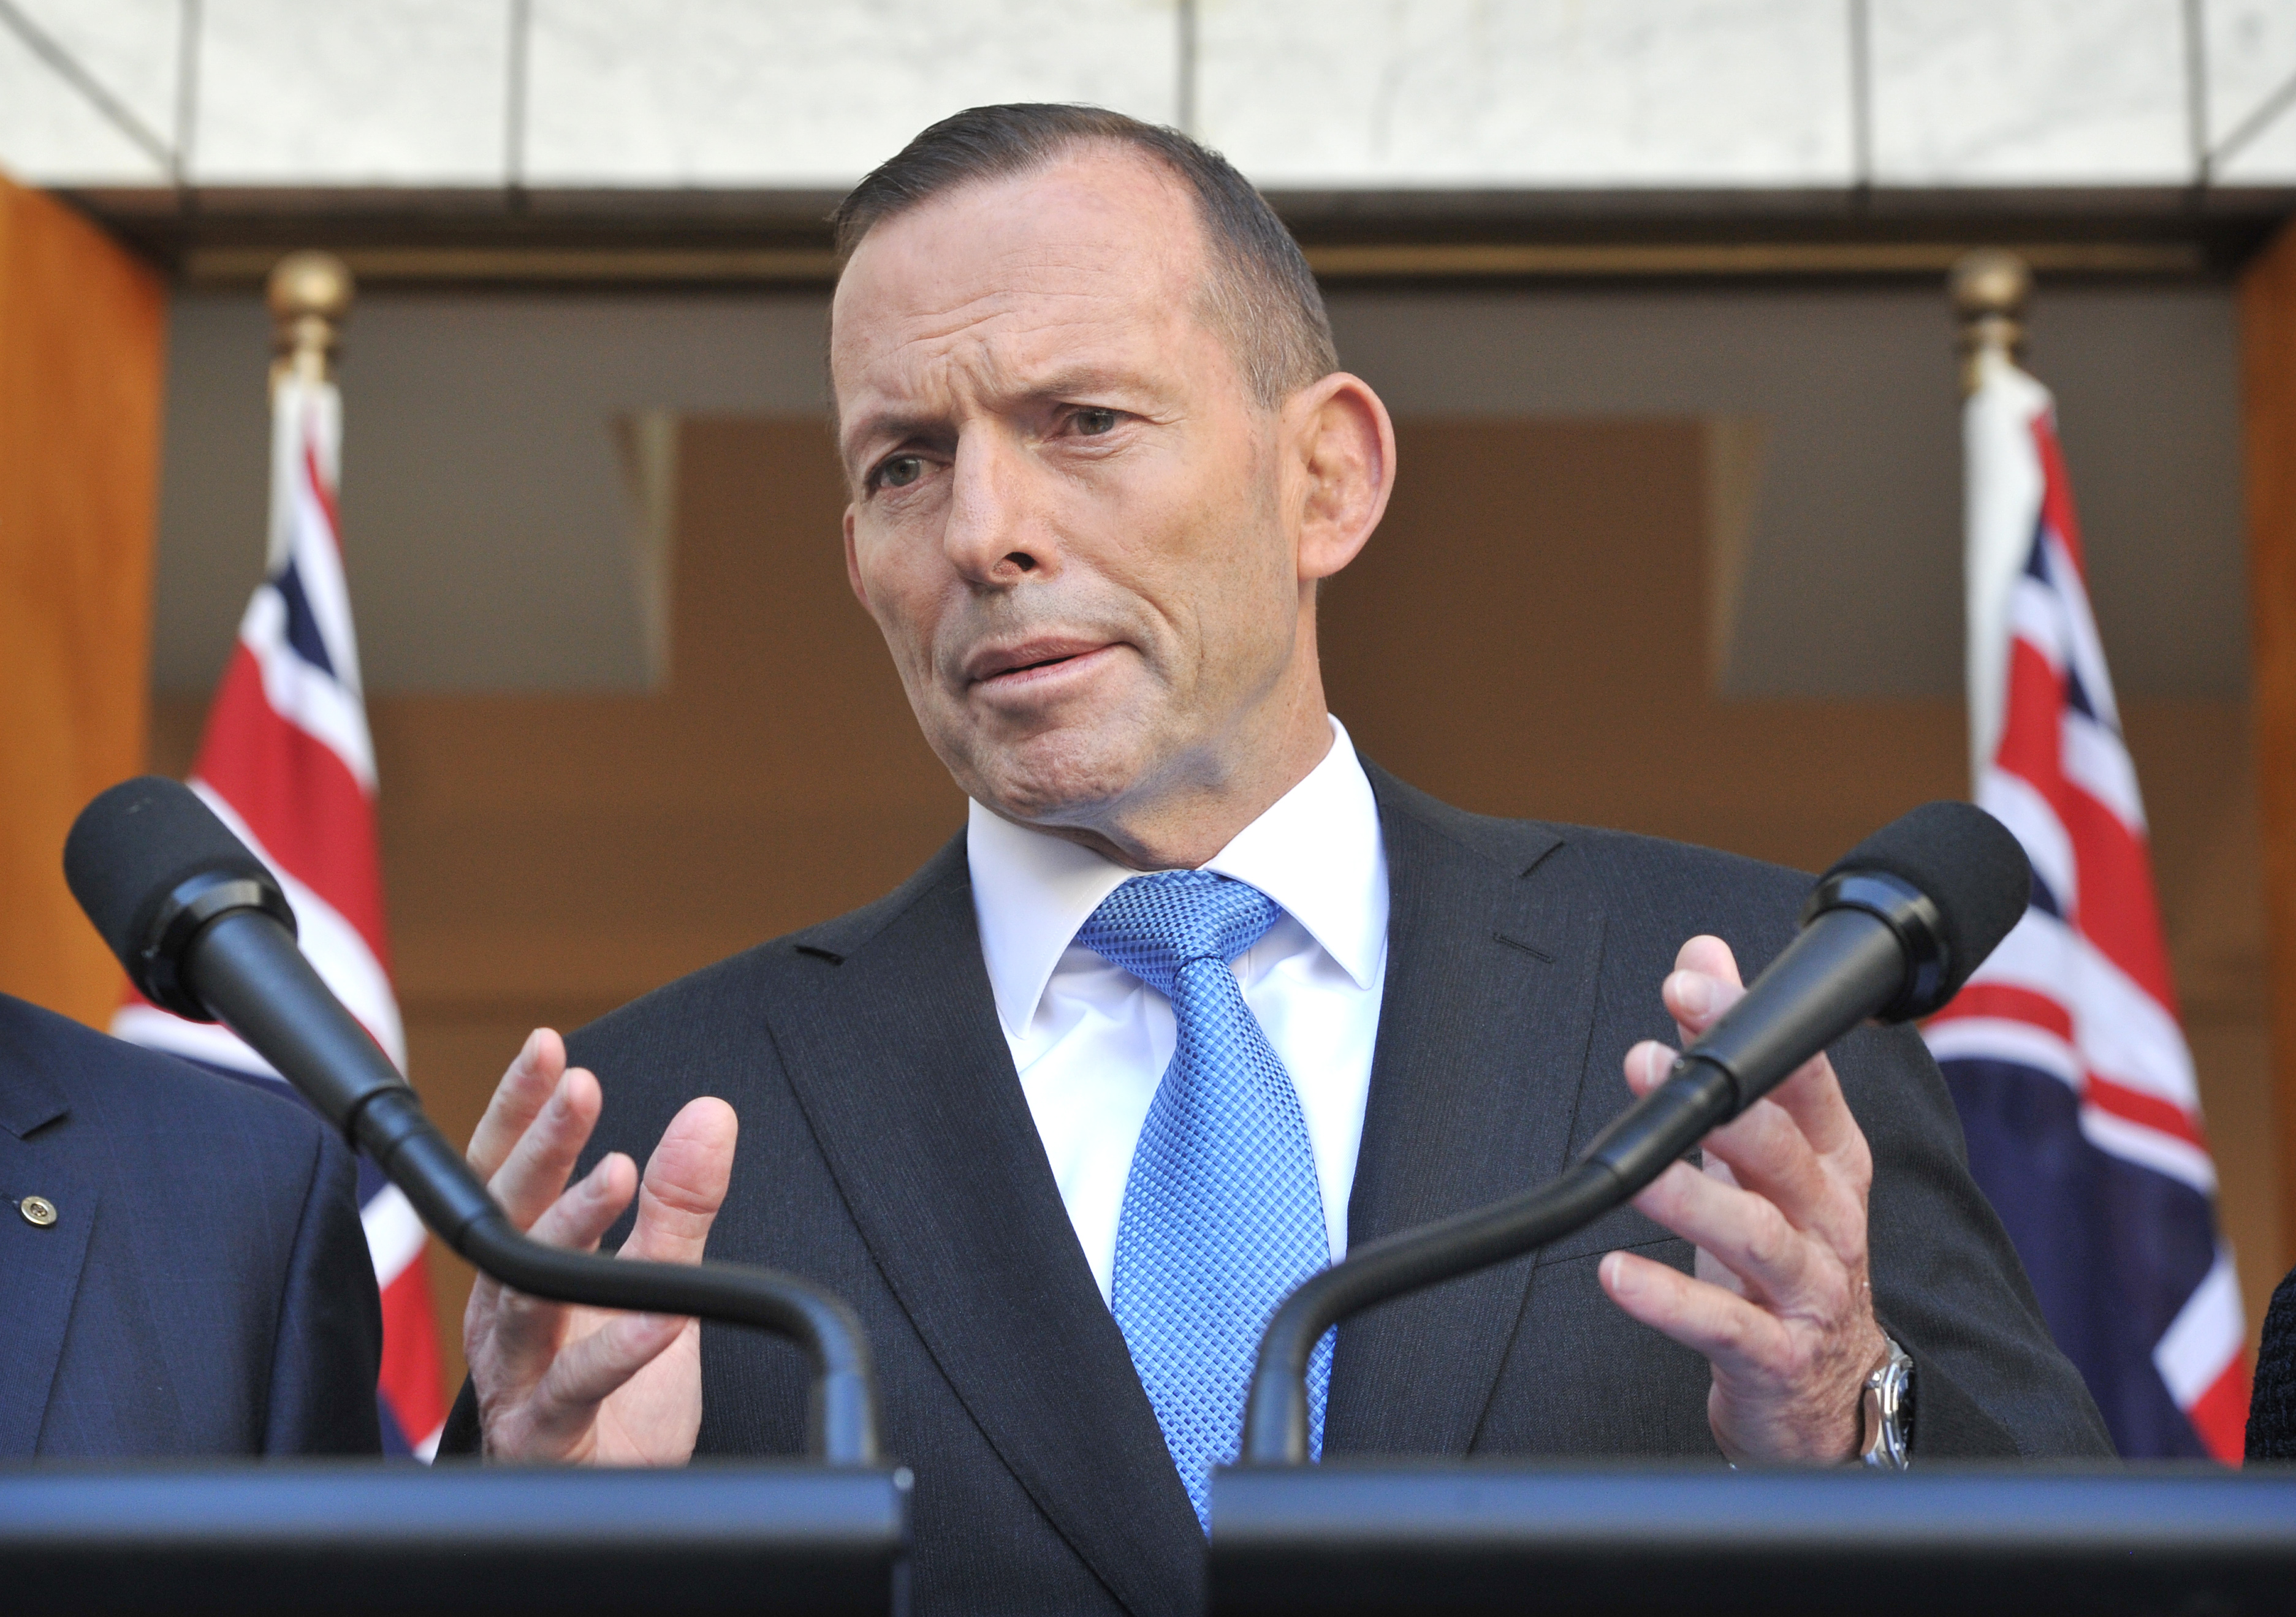 A volt ausztrál miniszterelnök szerint a klímaváltozás több jót tesz, mint amennyit árt